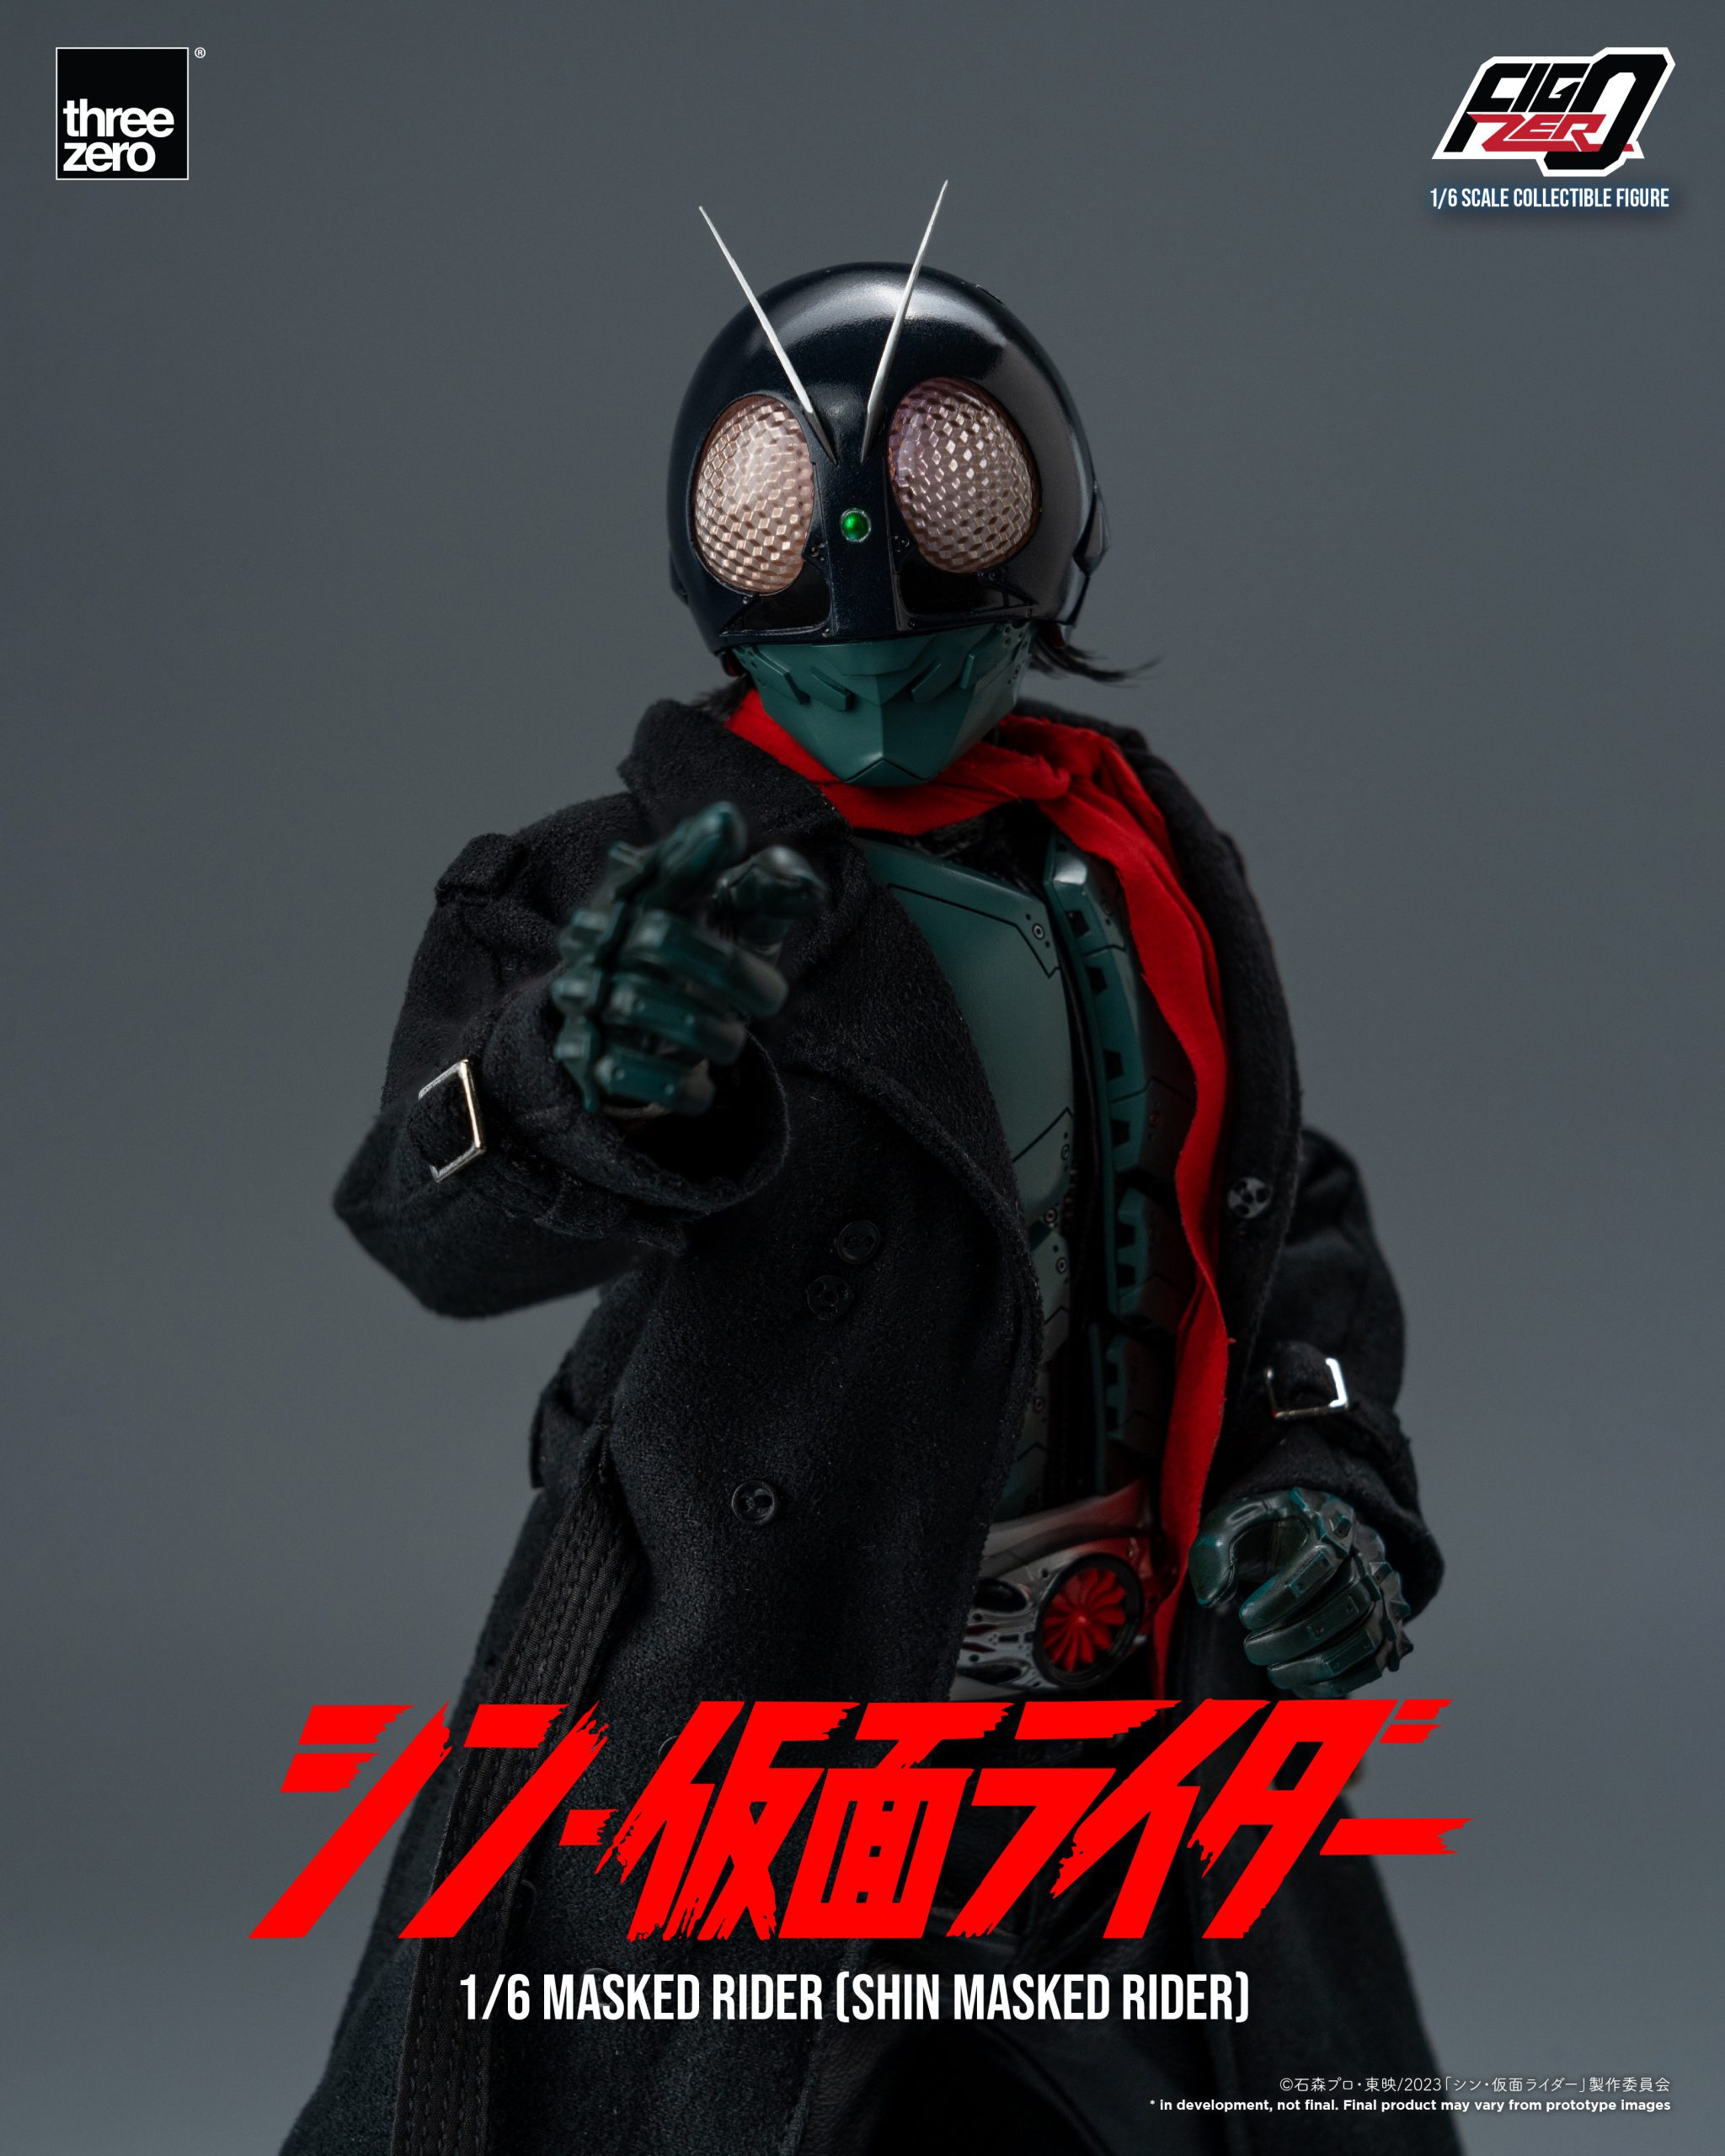 スリーゼロ シン・仮面ライダーフィグゼロ1/6 masked rider